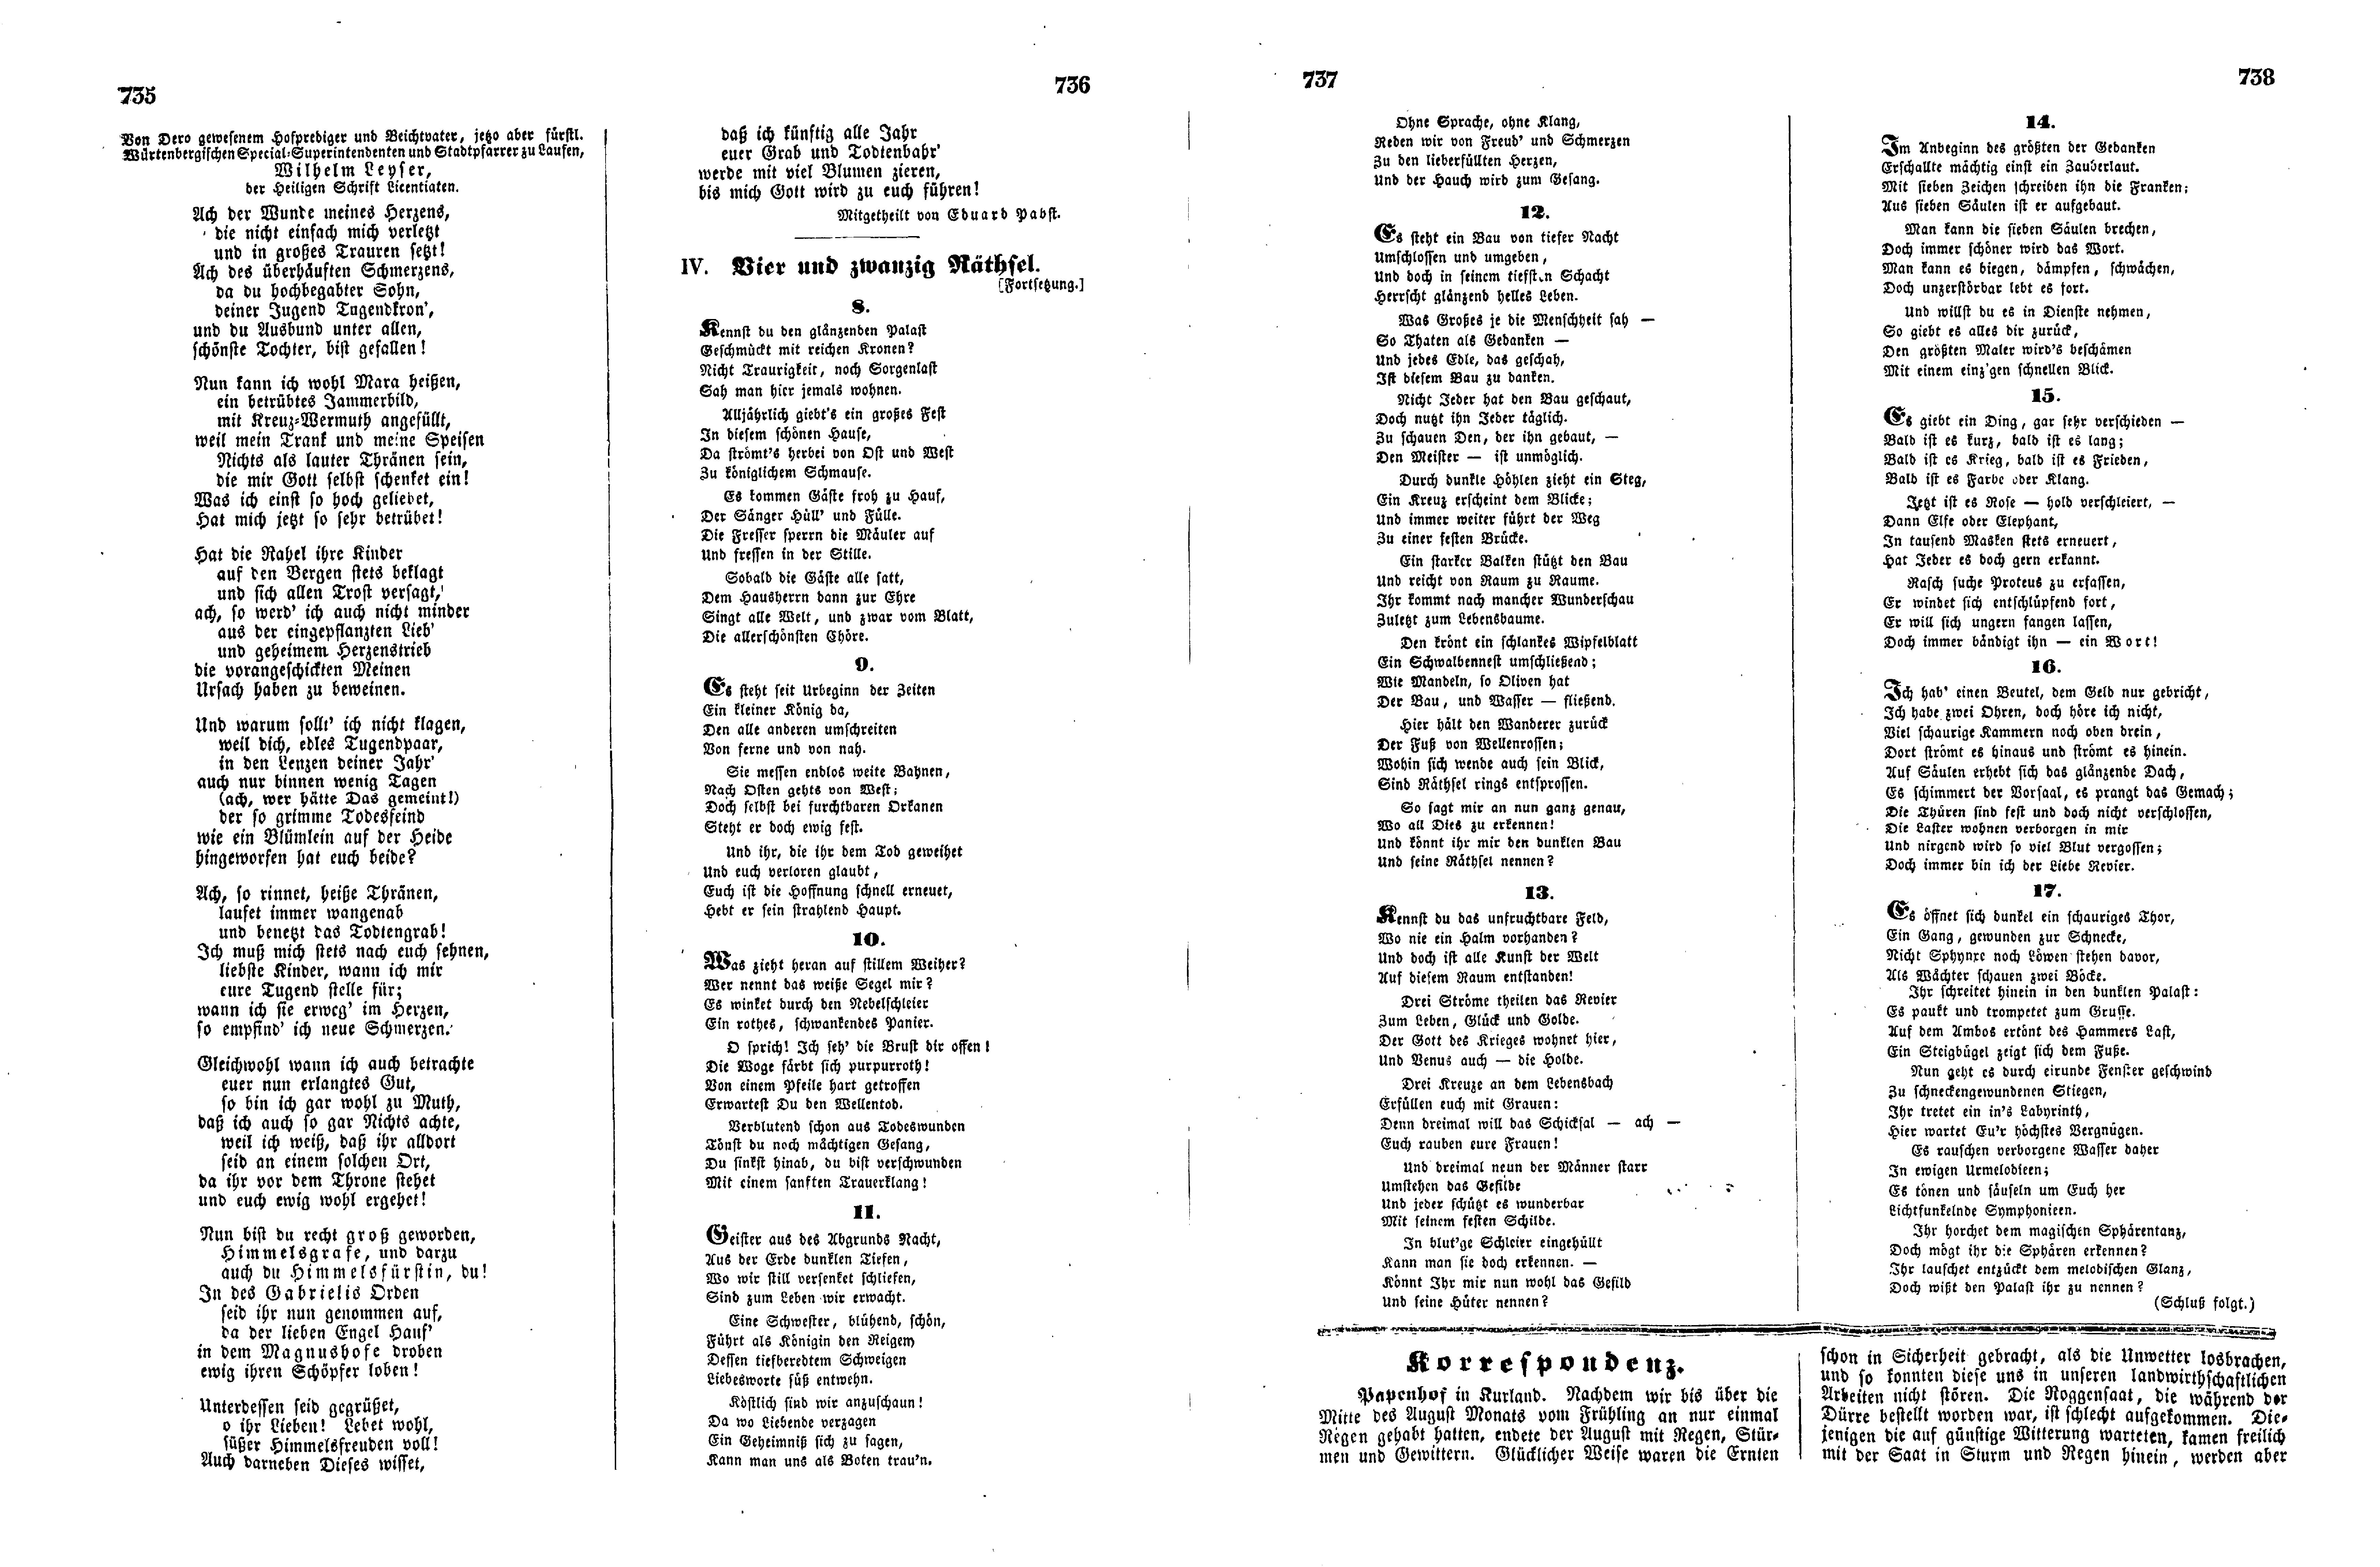 Das Inland [17] (1852) | 189. (735-738) Основной текст